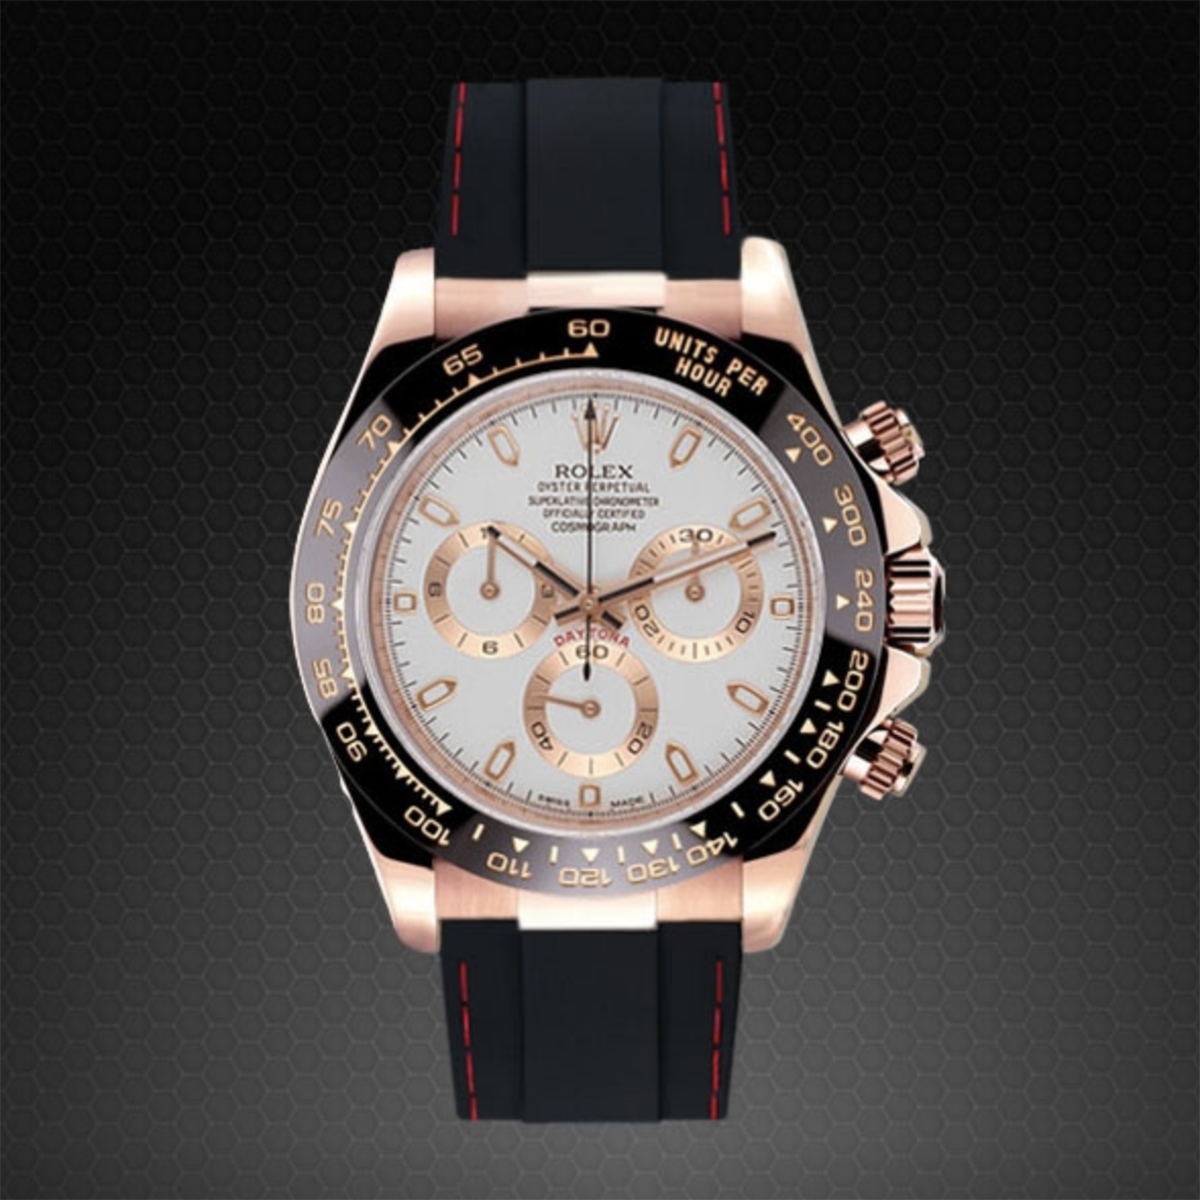 Rolex - Rubber B - Bracelet caoutchouc pour Daytona rose gold cuir - watch band leather strap - ABP Concept -